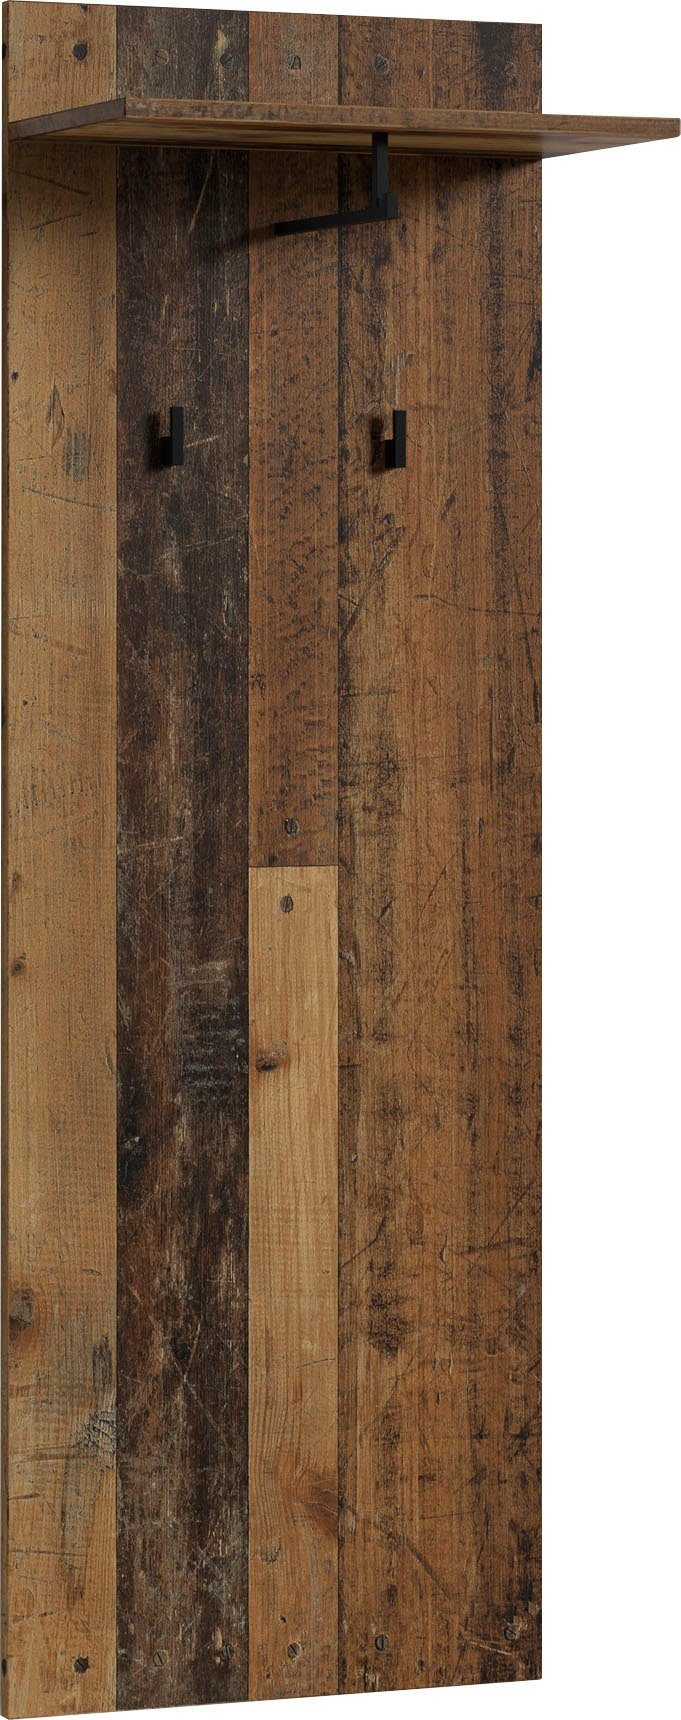 Breite mit Old cm Jakob, Ablage, Wood byLIVING Garderobenpaneel 48